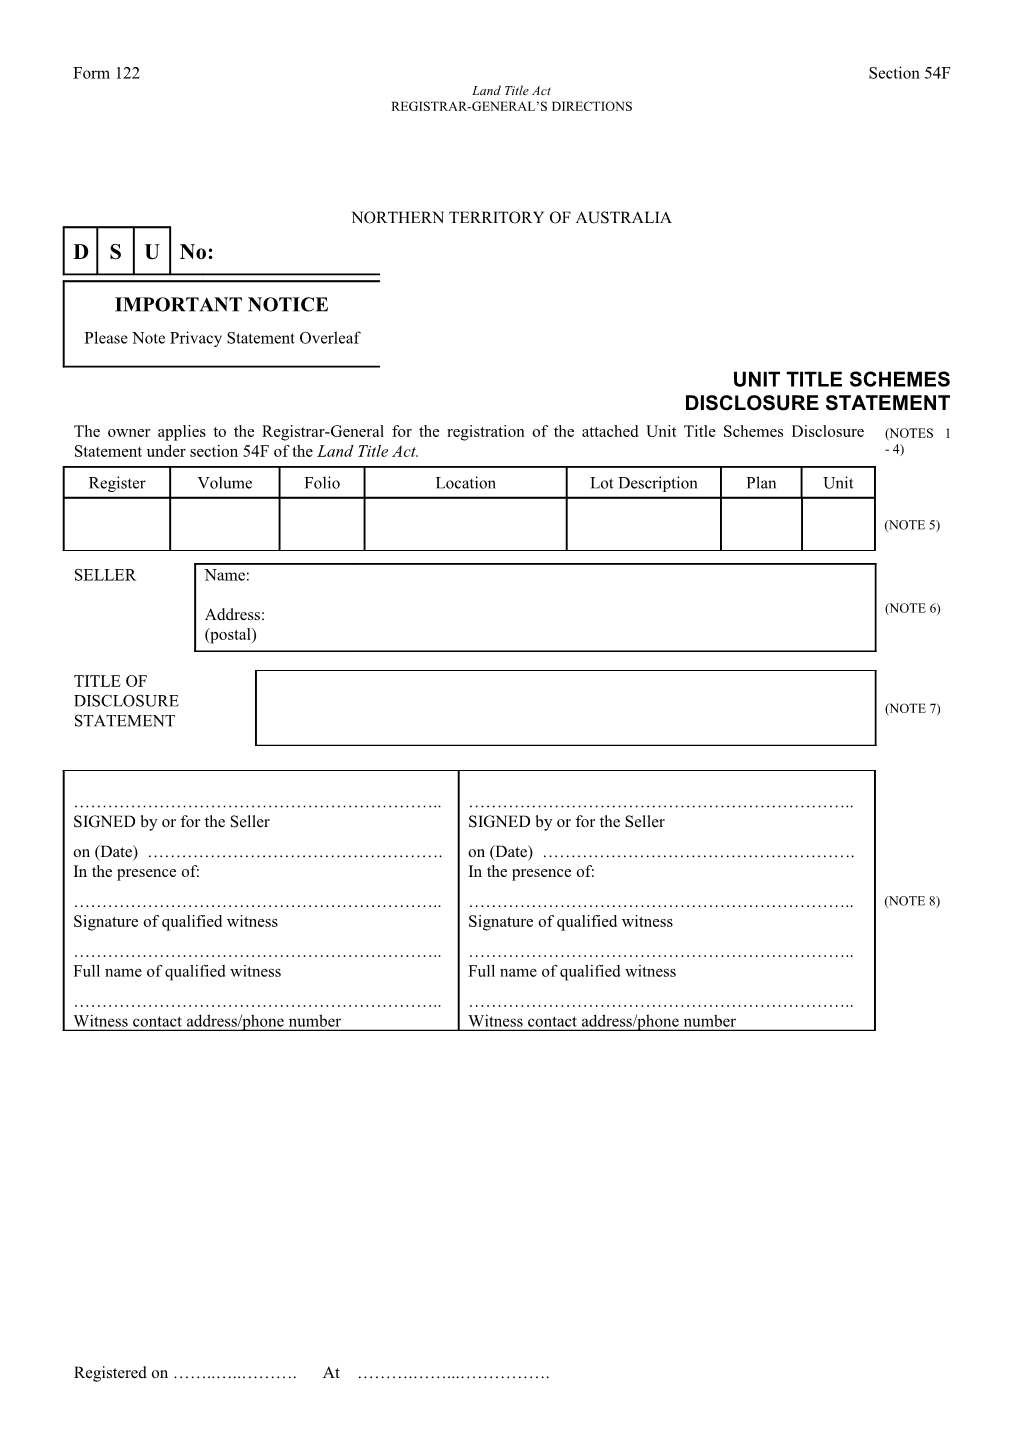 Form No. 122 - Unit Title Schemes Disclosure Statement